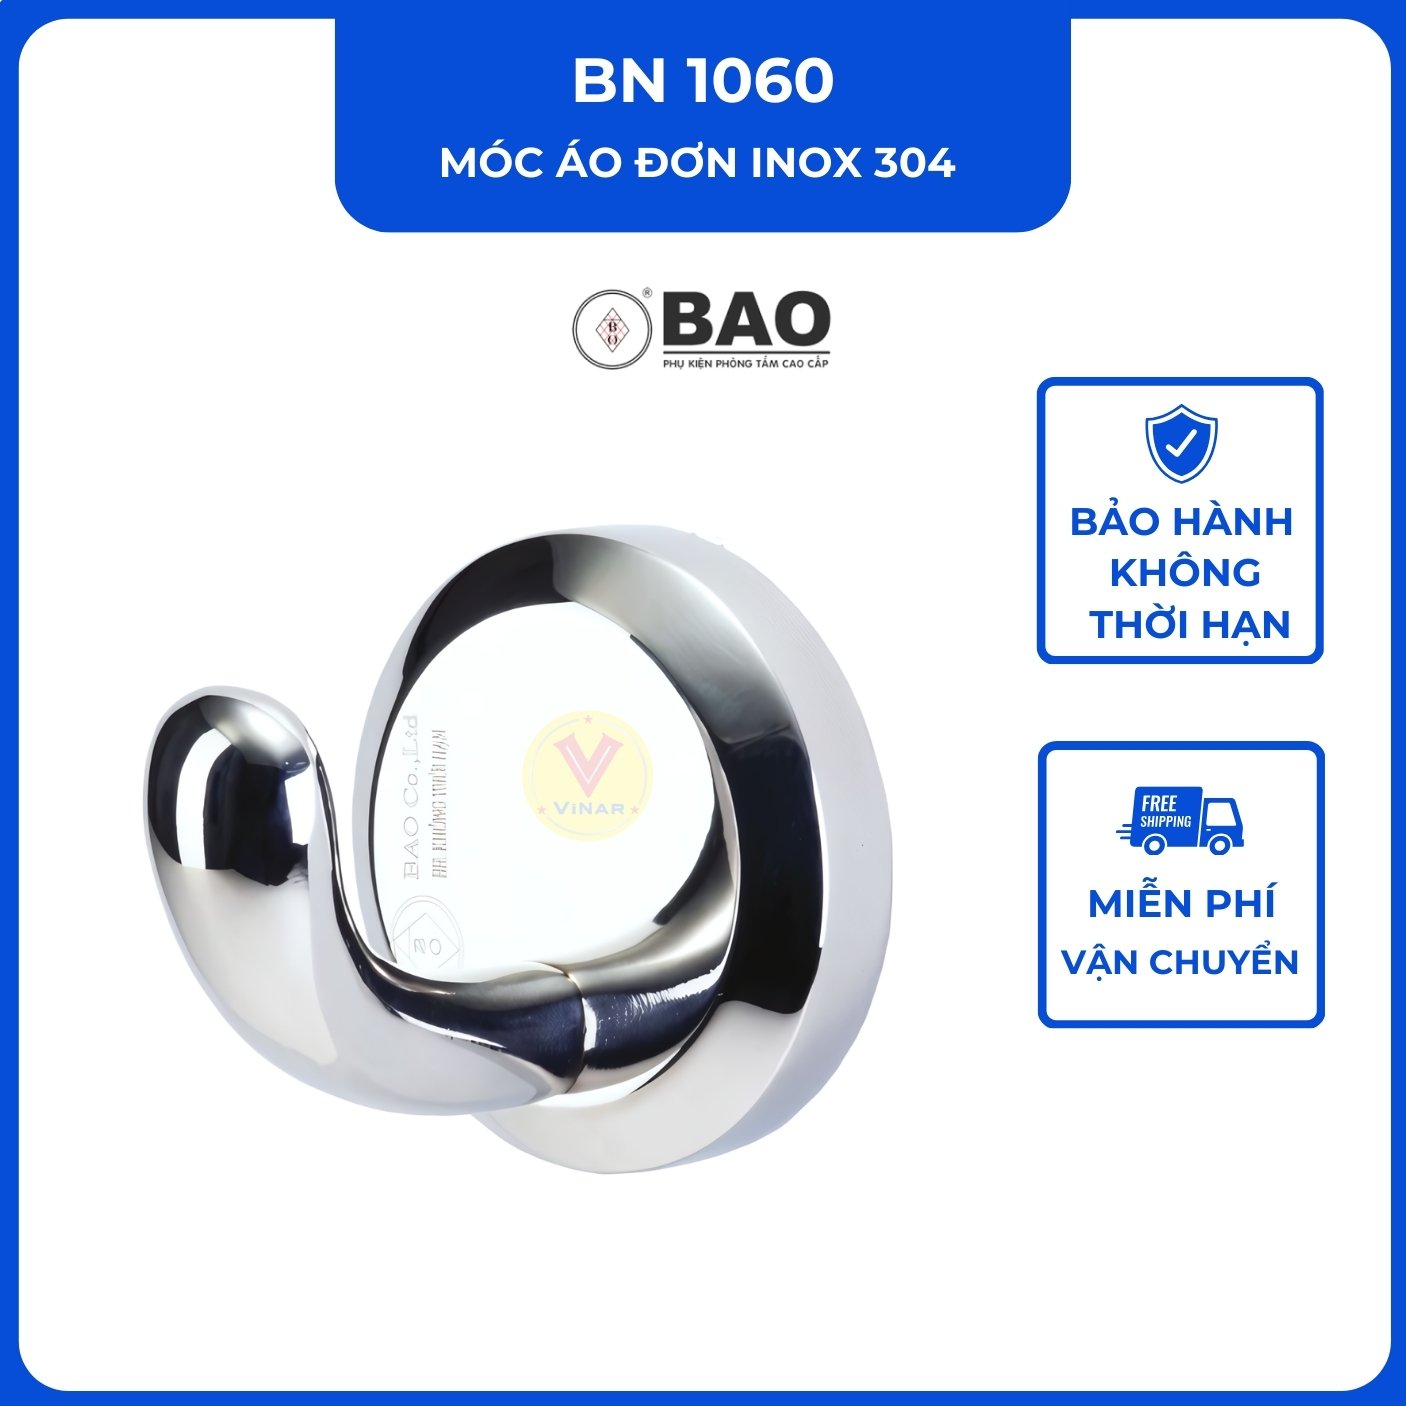 moc-ao-don-inox-304-BN1060